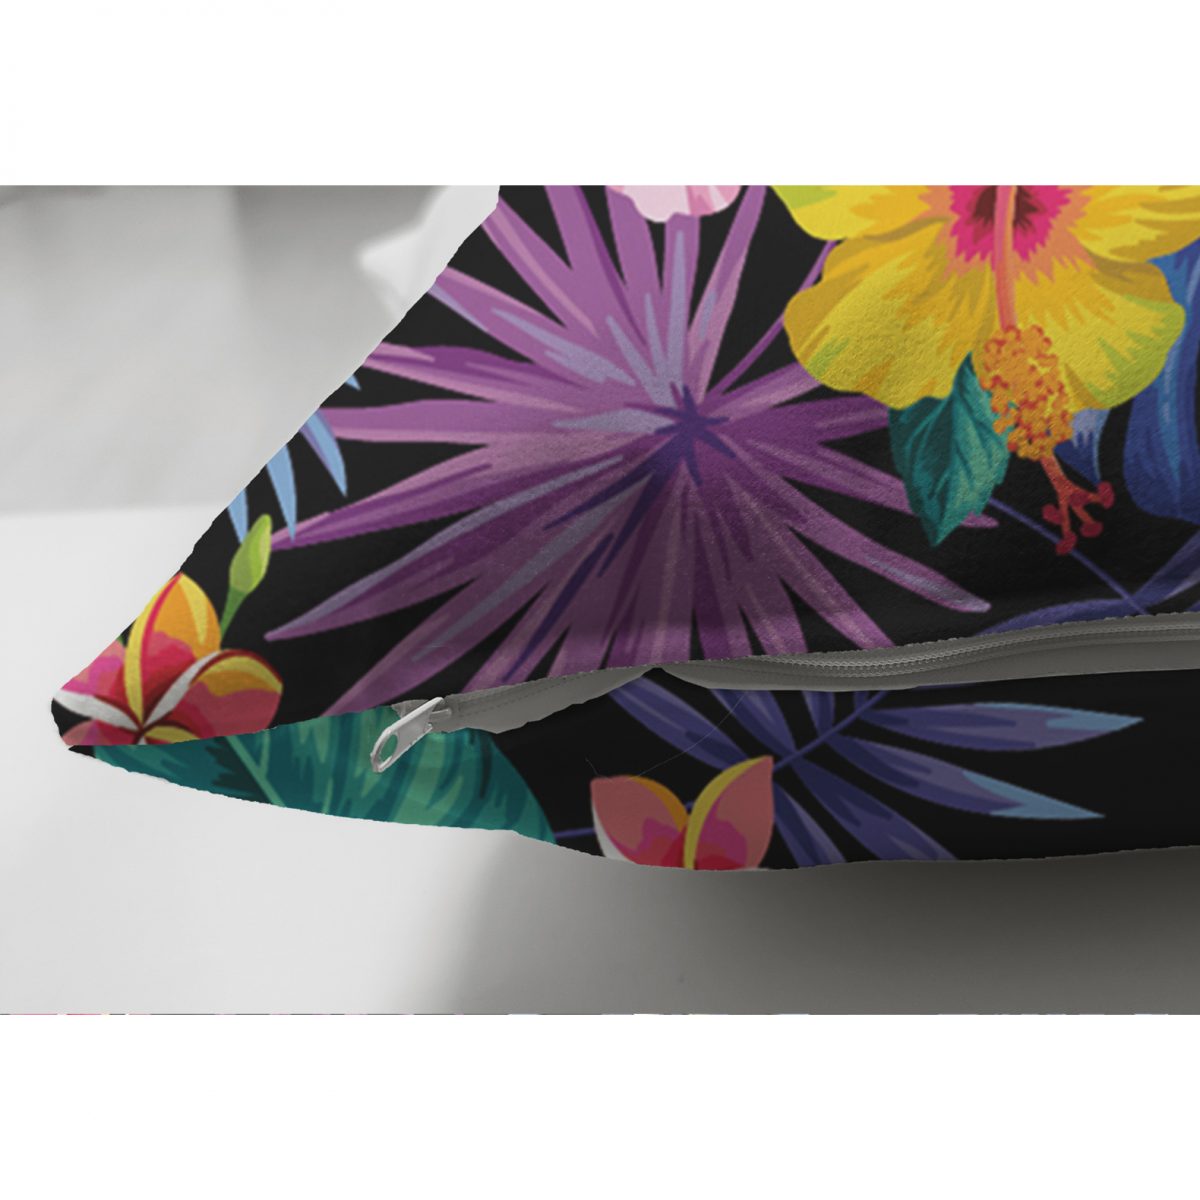 Çift Taraflı Siyah Zeminde Rengarenk Çiçekler Tasarımlı Dekoratif Süet Yastık Kırlent Kılıfı Realhomes